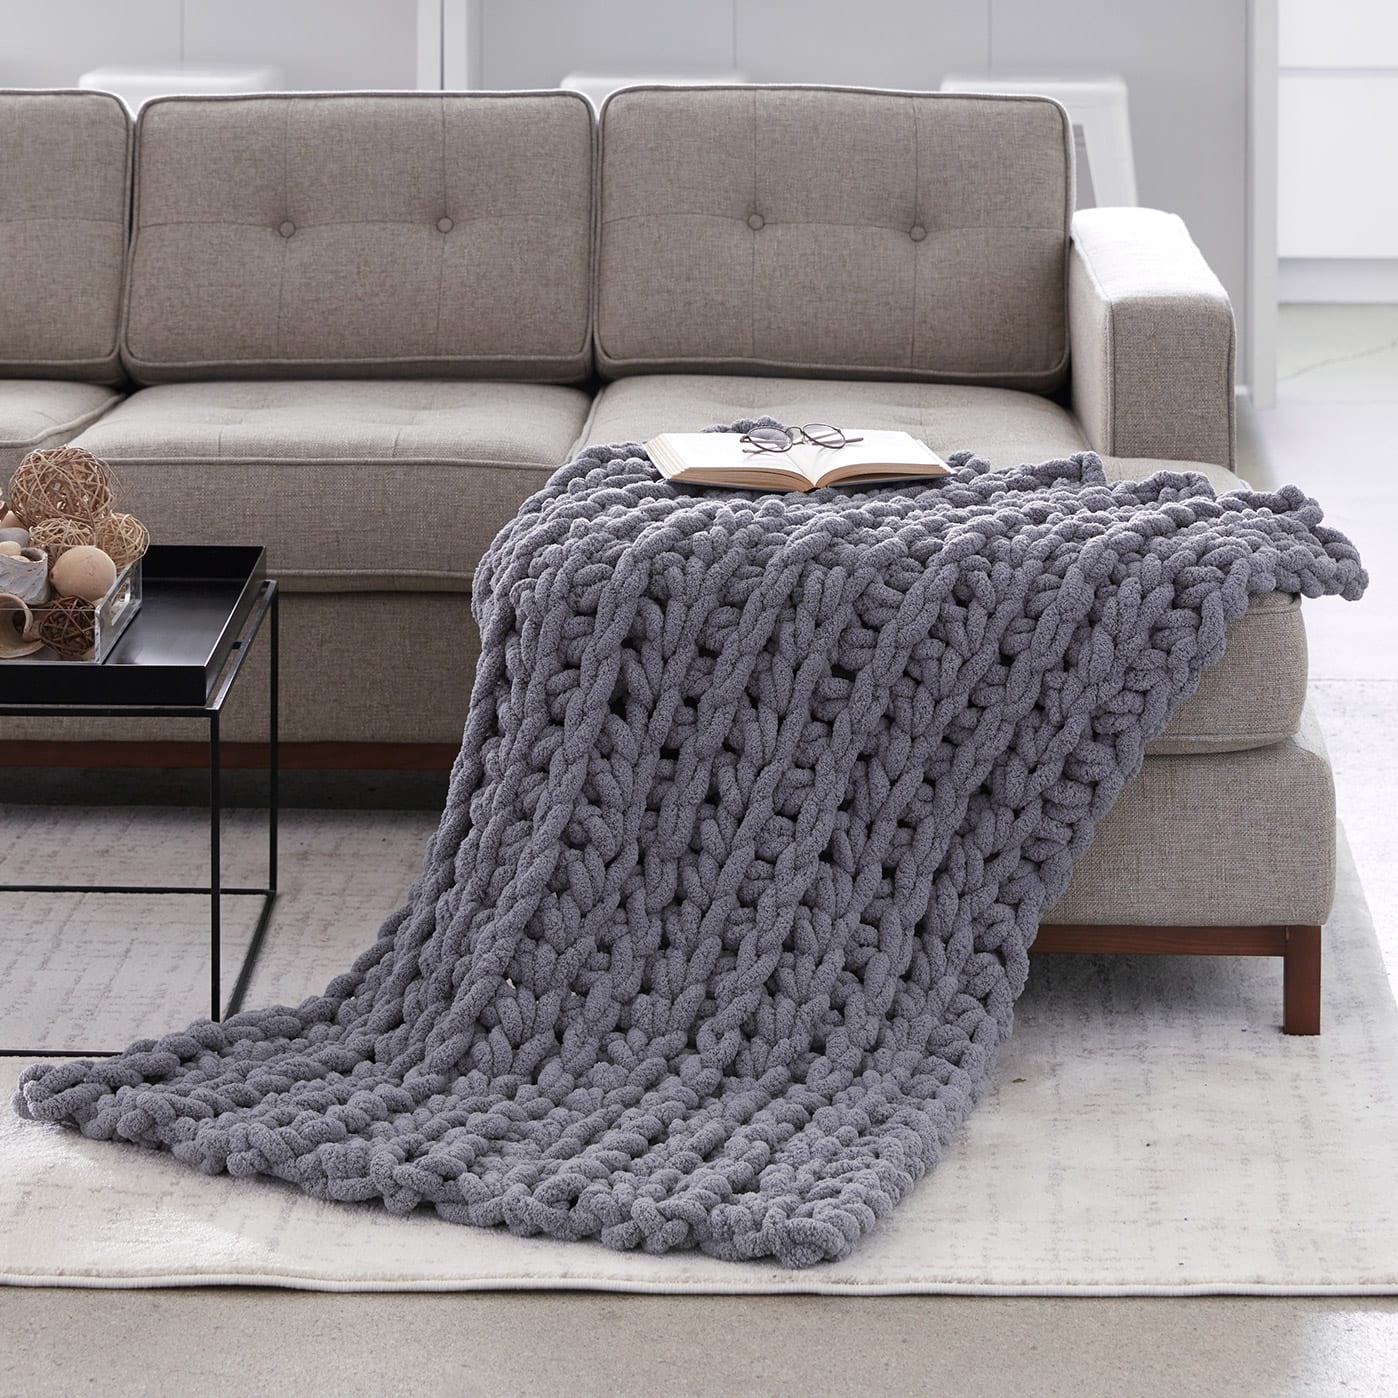 Bernat Blanket Yarn Blanket Crochet Patterns - Easy Crochet Patterns   Crochet blanket yarn, Crochet blanket bernat blanket yarn, Chunky crochet  blanket pattern